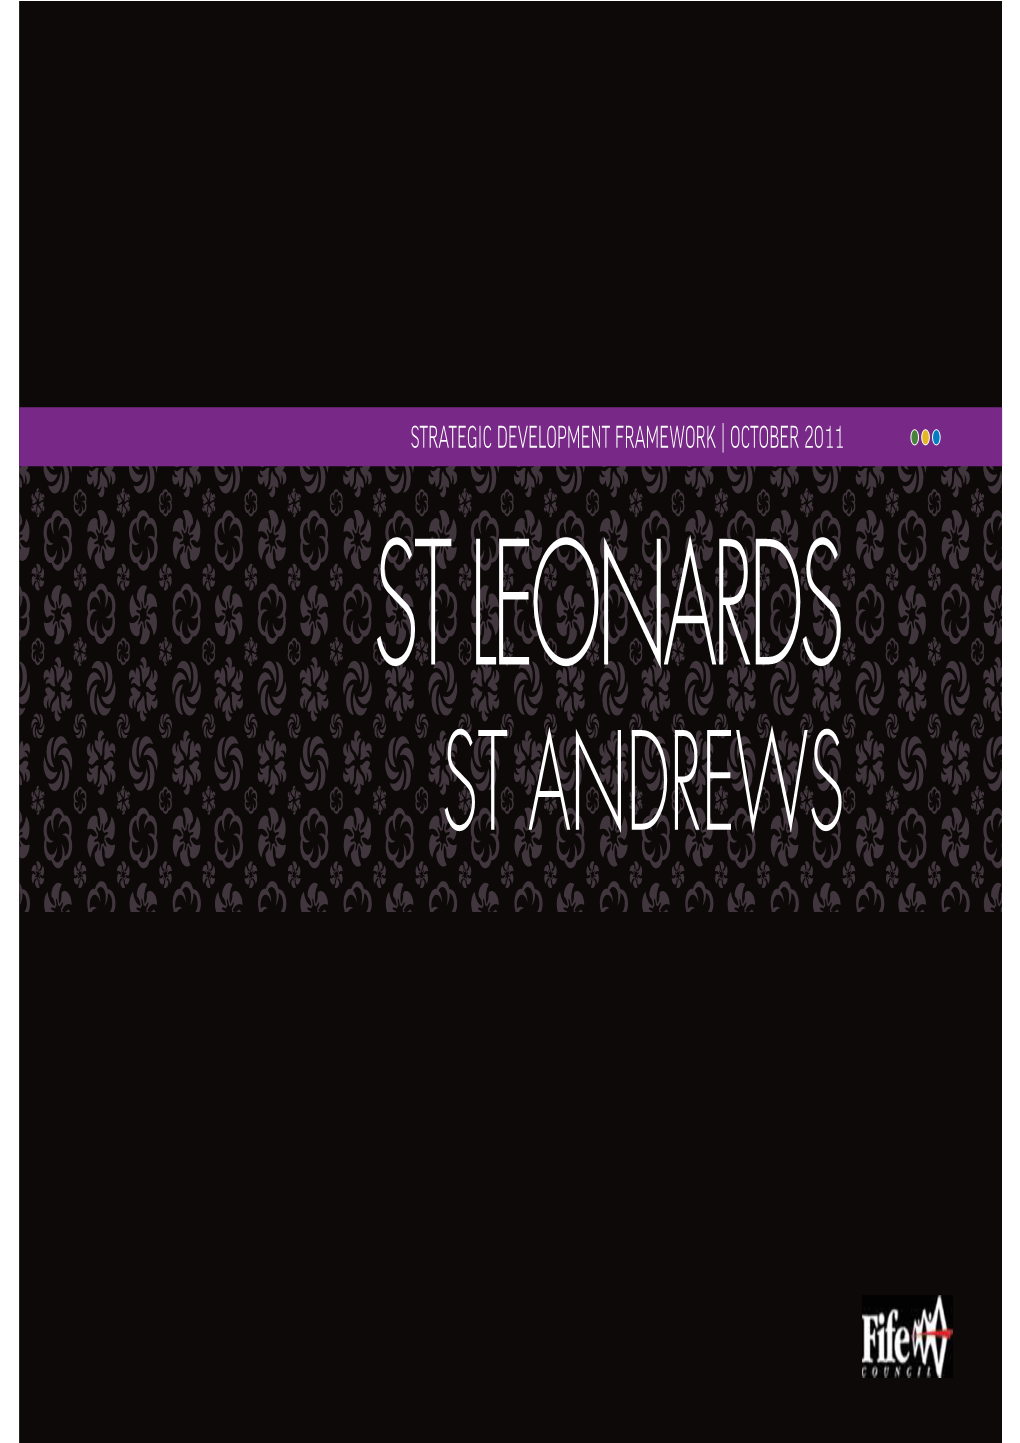 St Leonards Strategic Development Framework